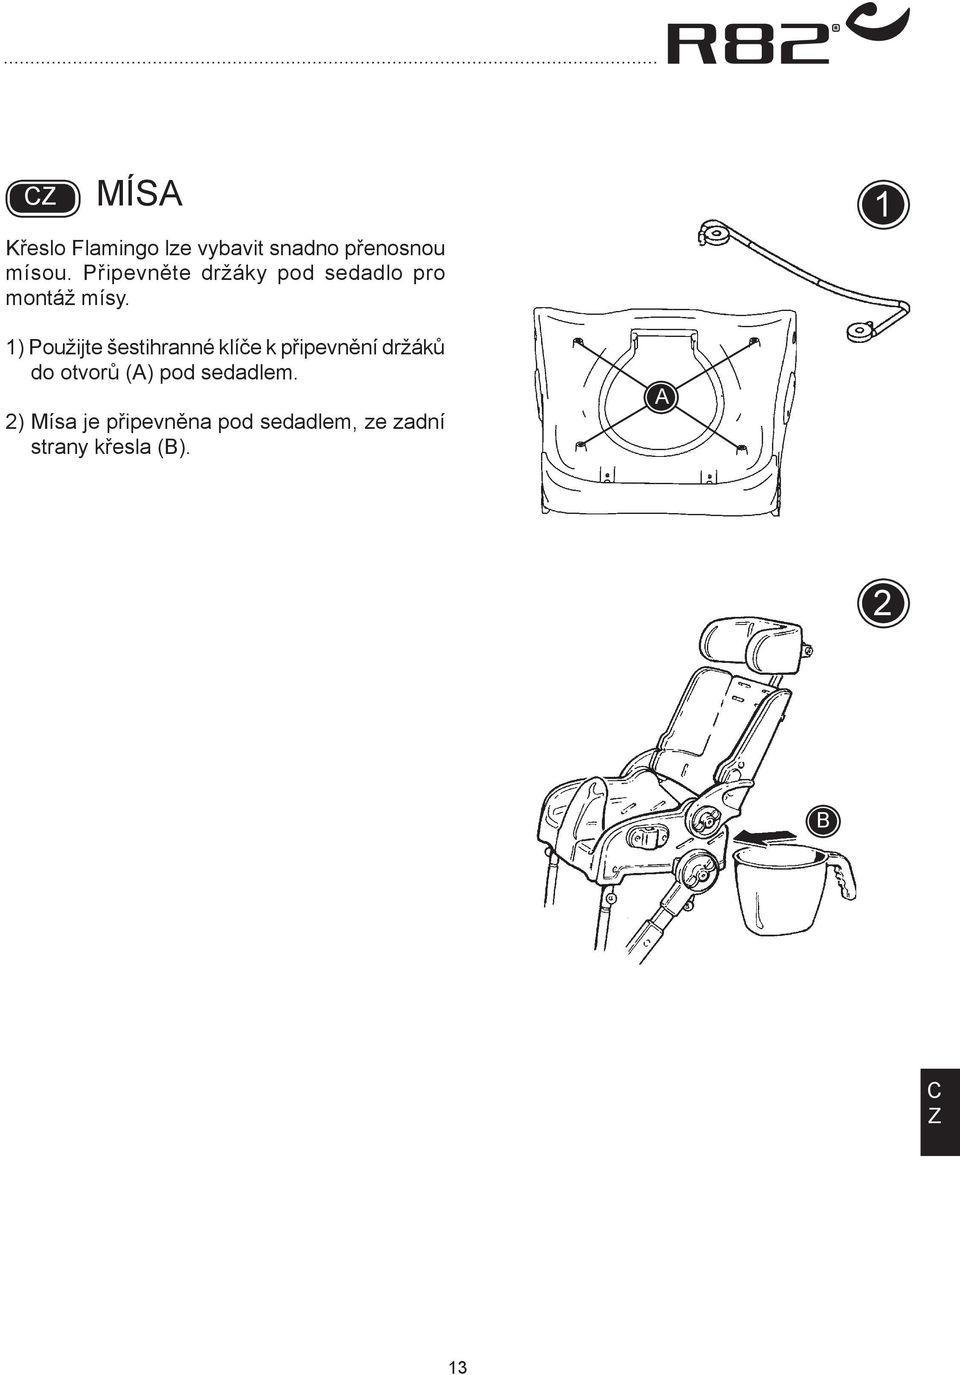 1) Použijte šestihranné klíče k připevnění držáků do otvorů ()